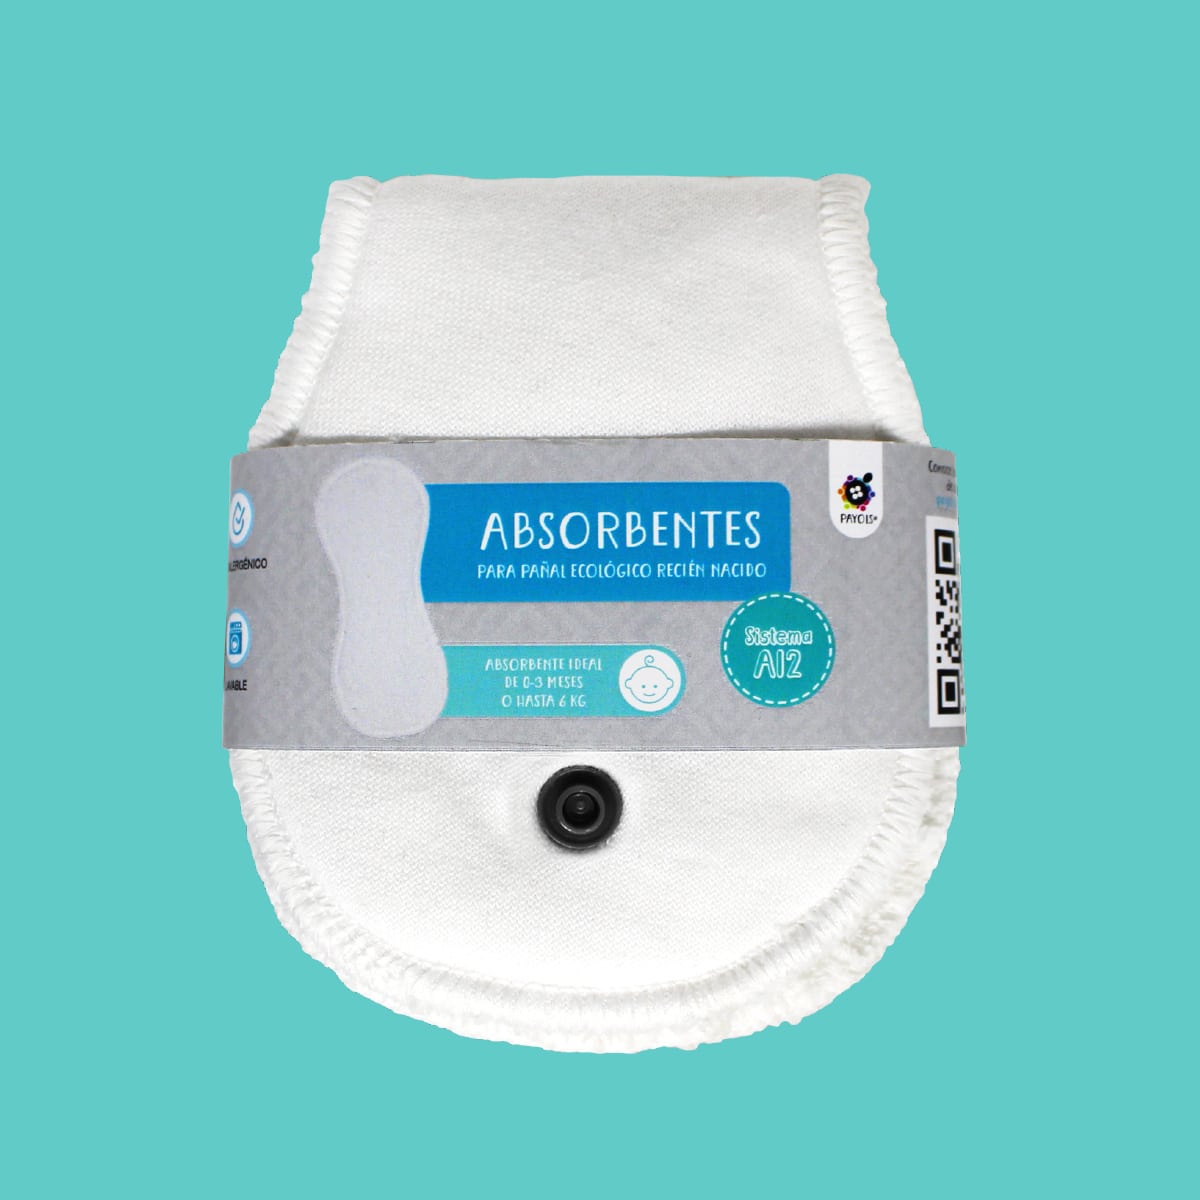 Repuesto/absorbente para Pañal Recién Nacido Sistema AI2 (2piezas)